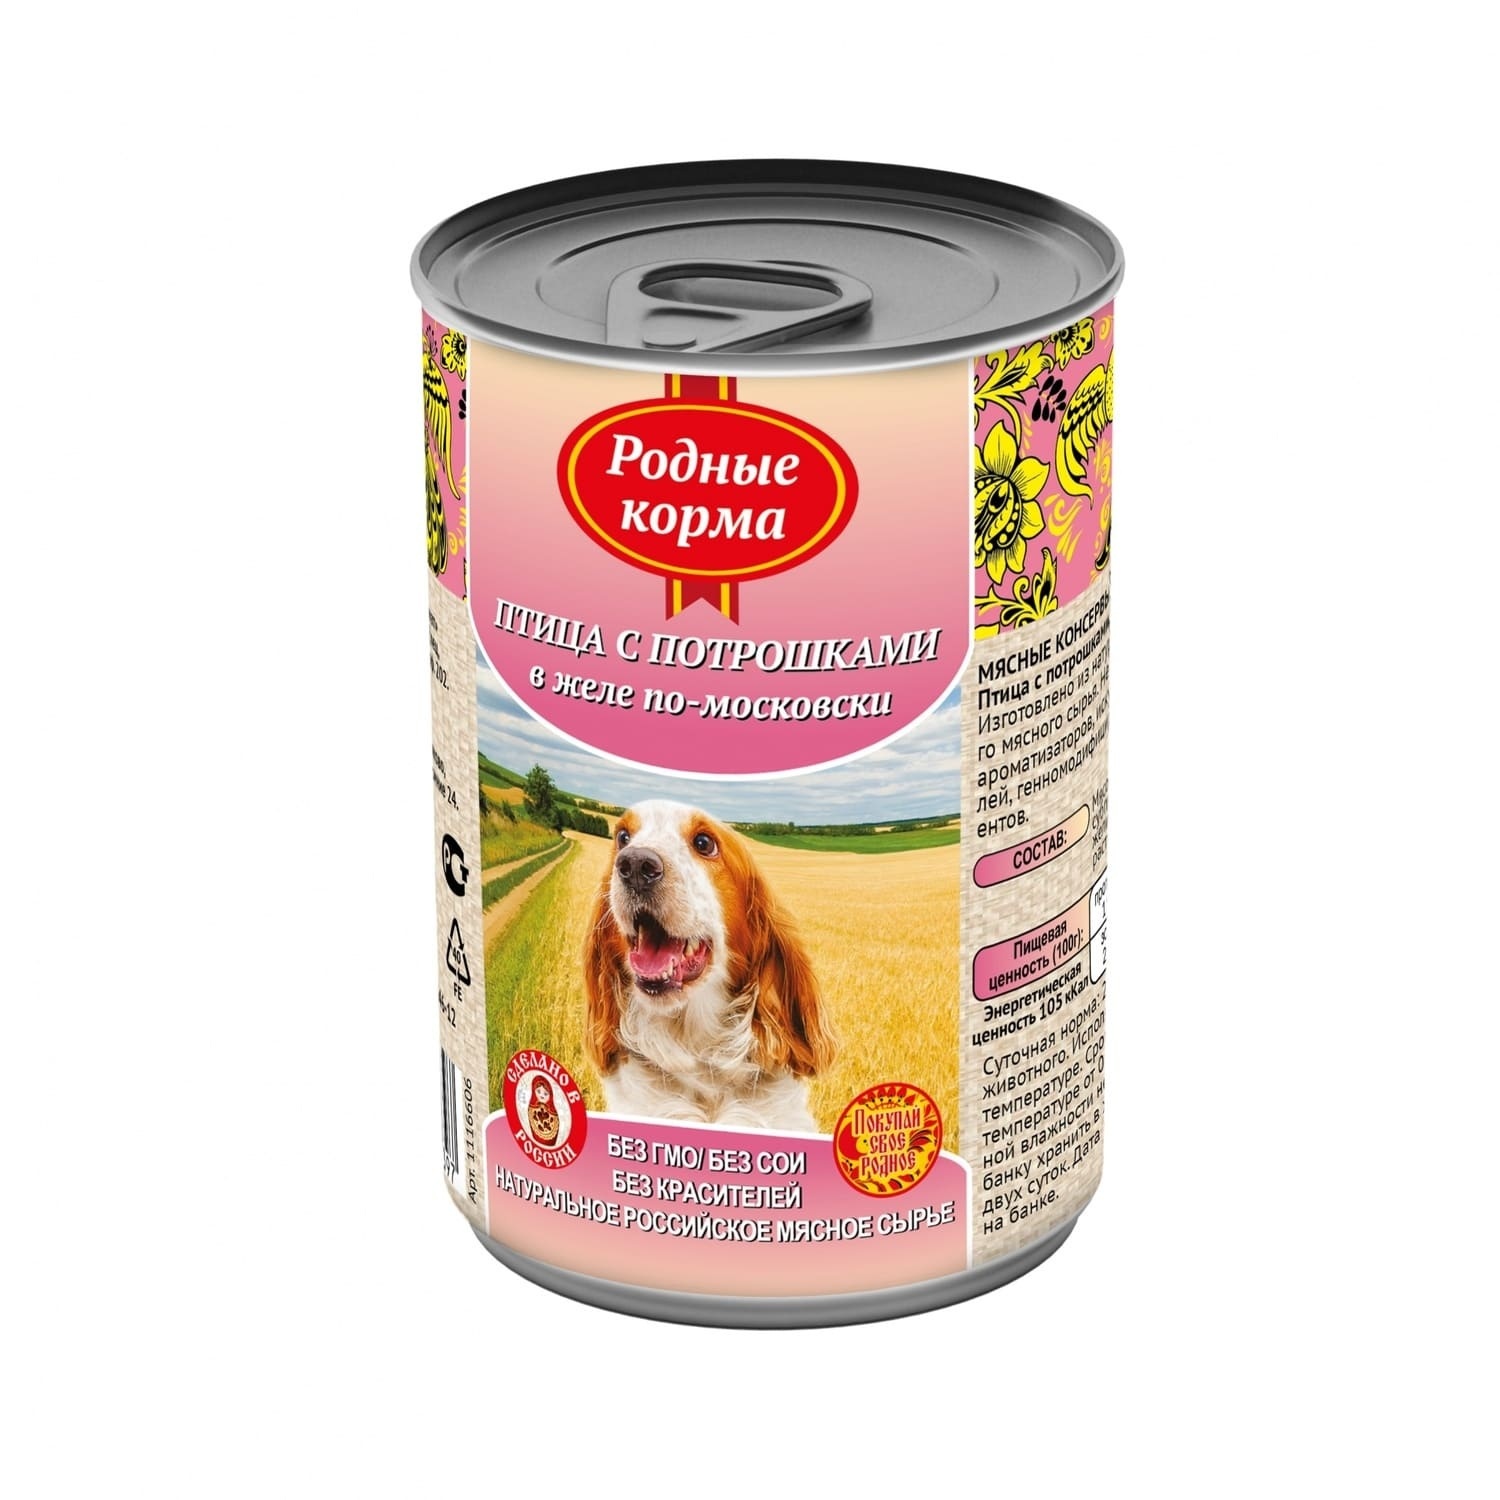 цена Родные корма Родные корма консервы для собак, птица с потрошками в желе по-московски (970 г)